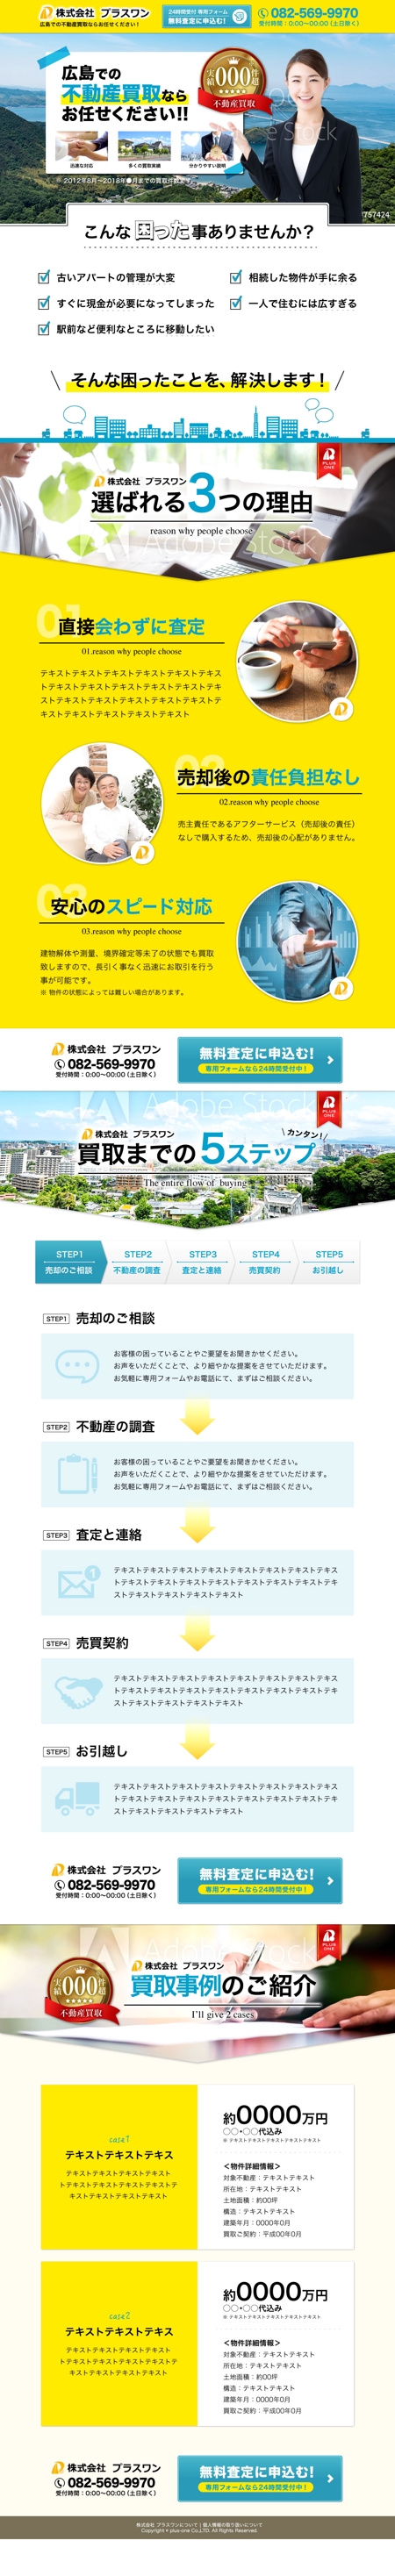 Joker Design (a_uchida)さんの広島での不動産の買取査定を広く募集するランディングページへの提案